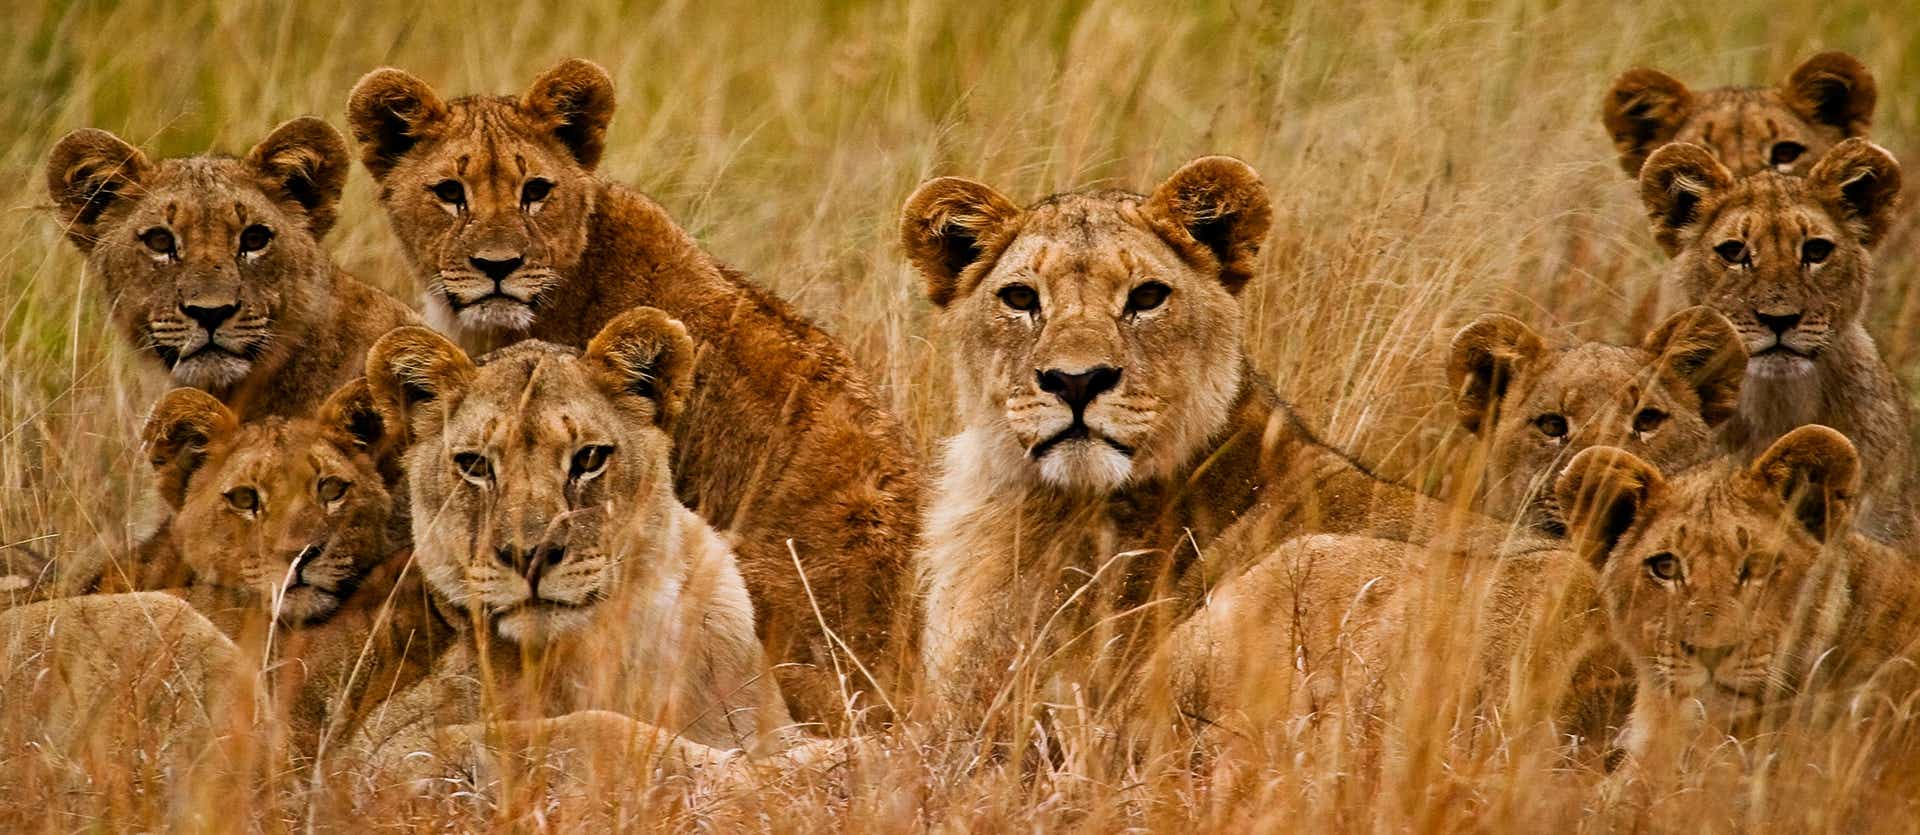 Parque Nacional de Kruger <span class="iconos separador"></span> Sudáfrica